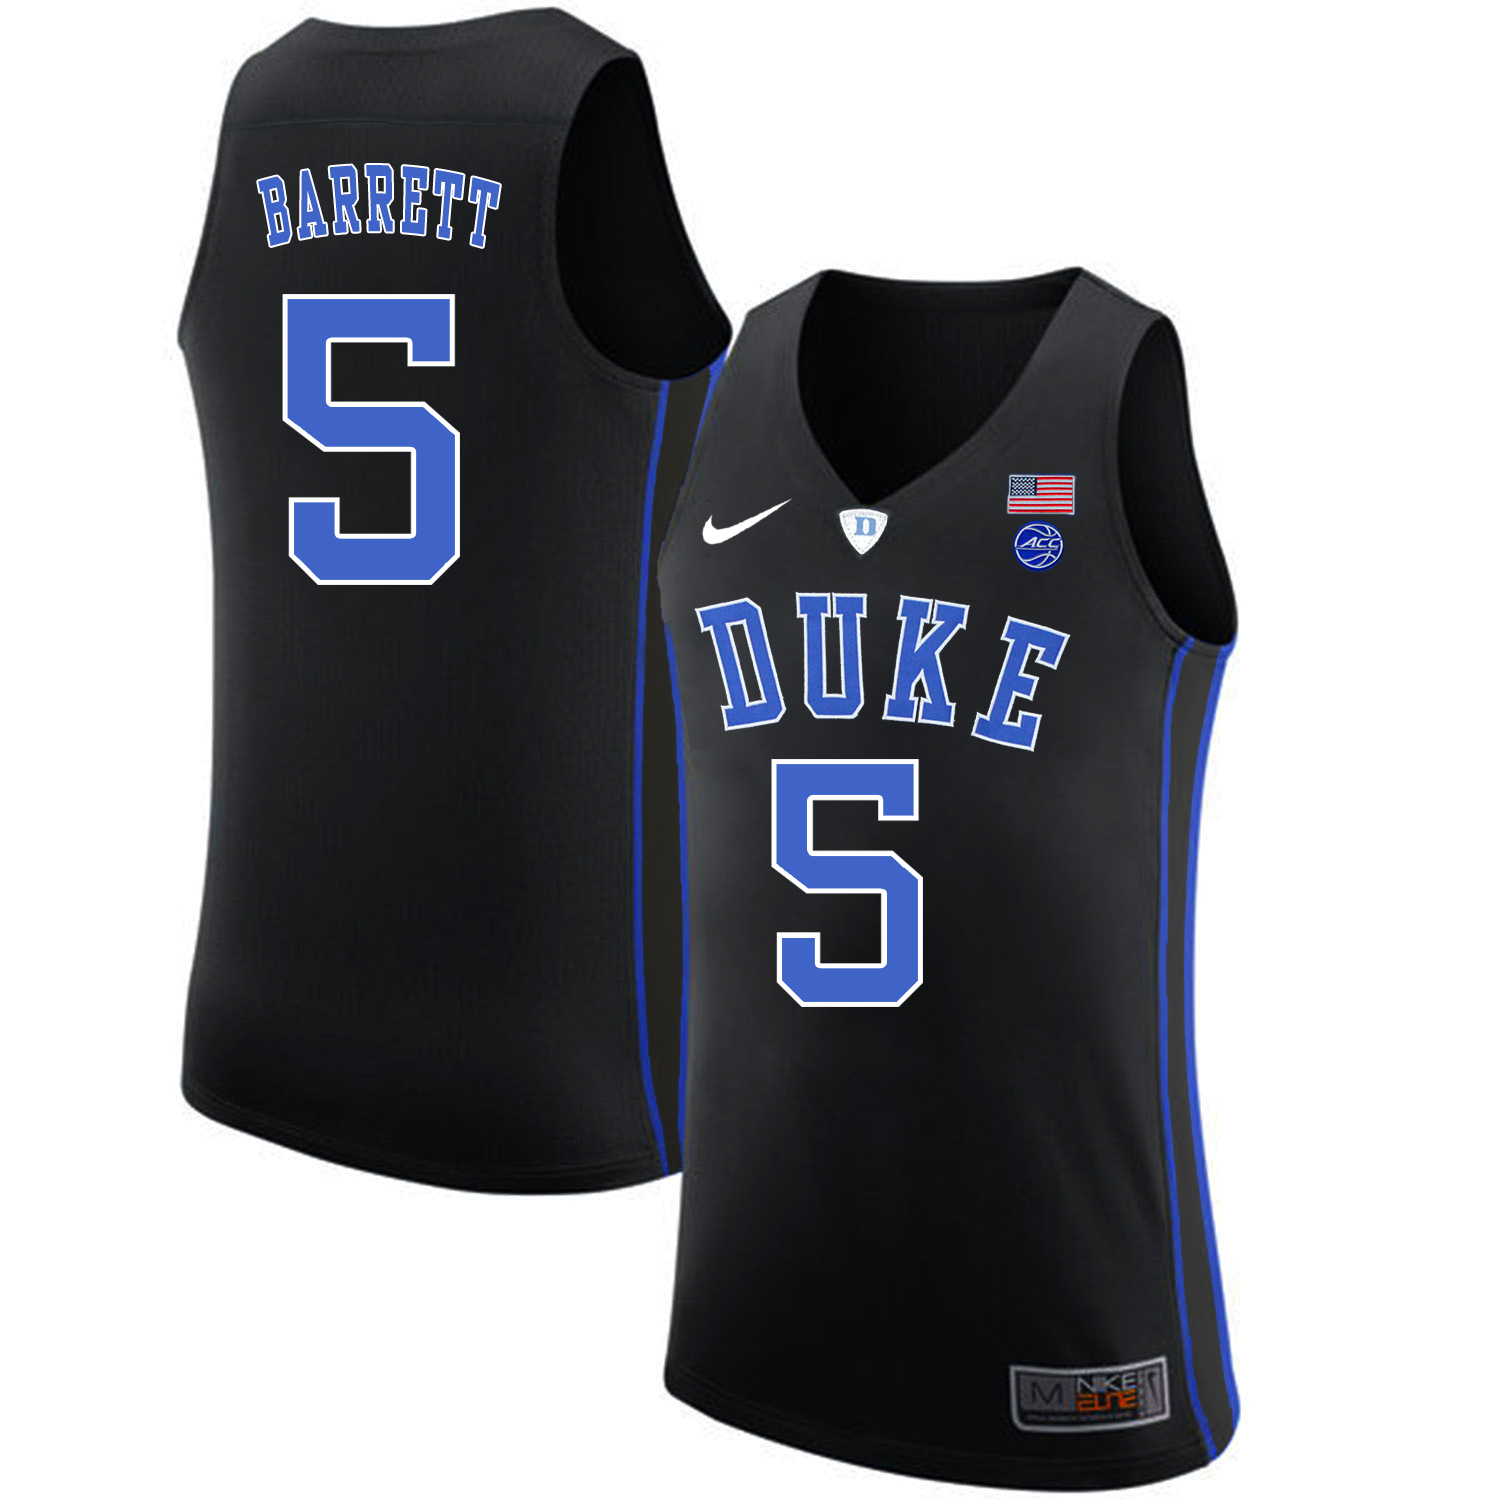 Duke Blue Devils 5 RJ Barrett Black Nike College Basketball Jersey